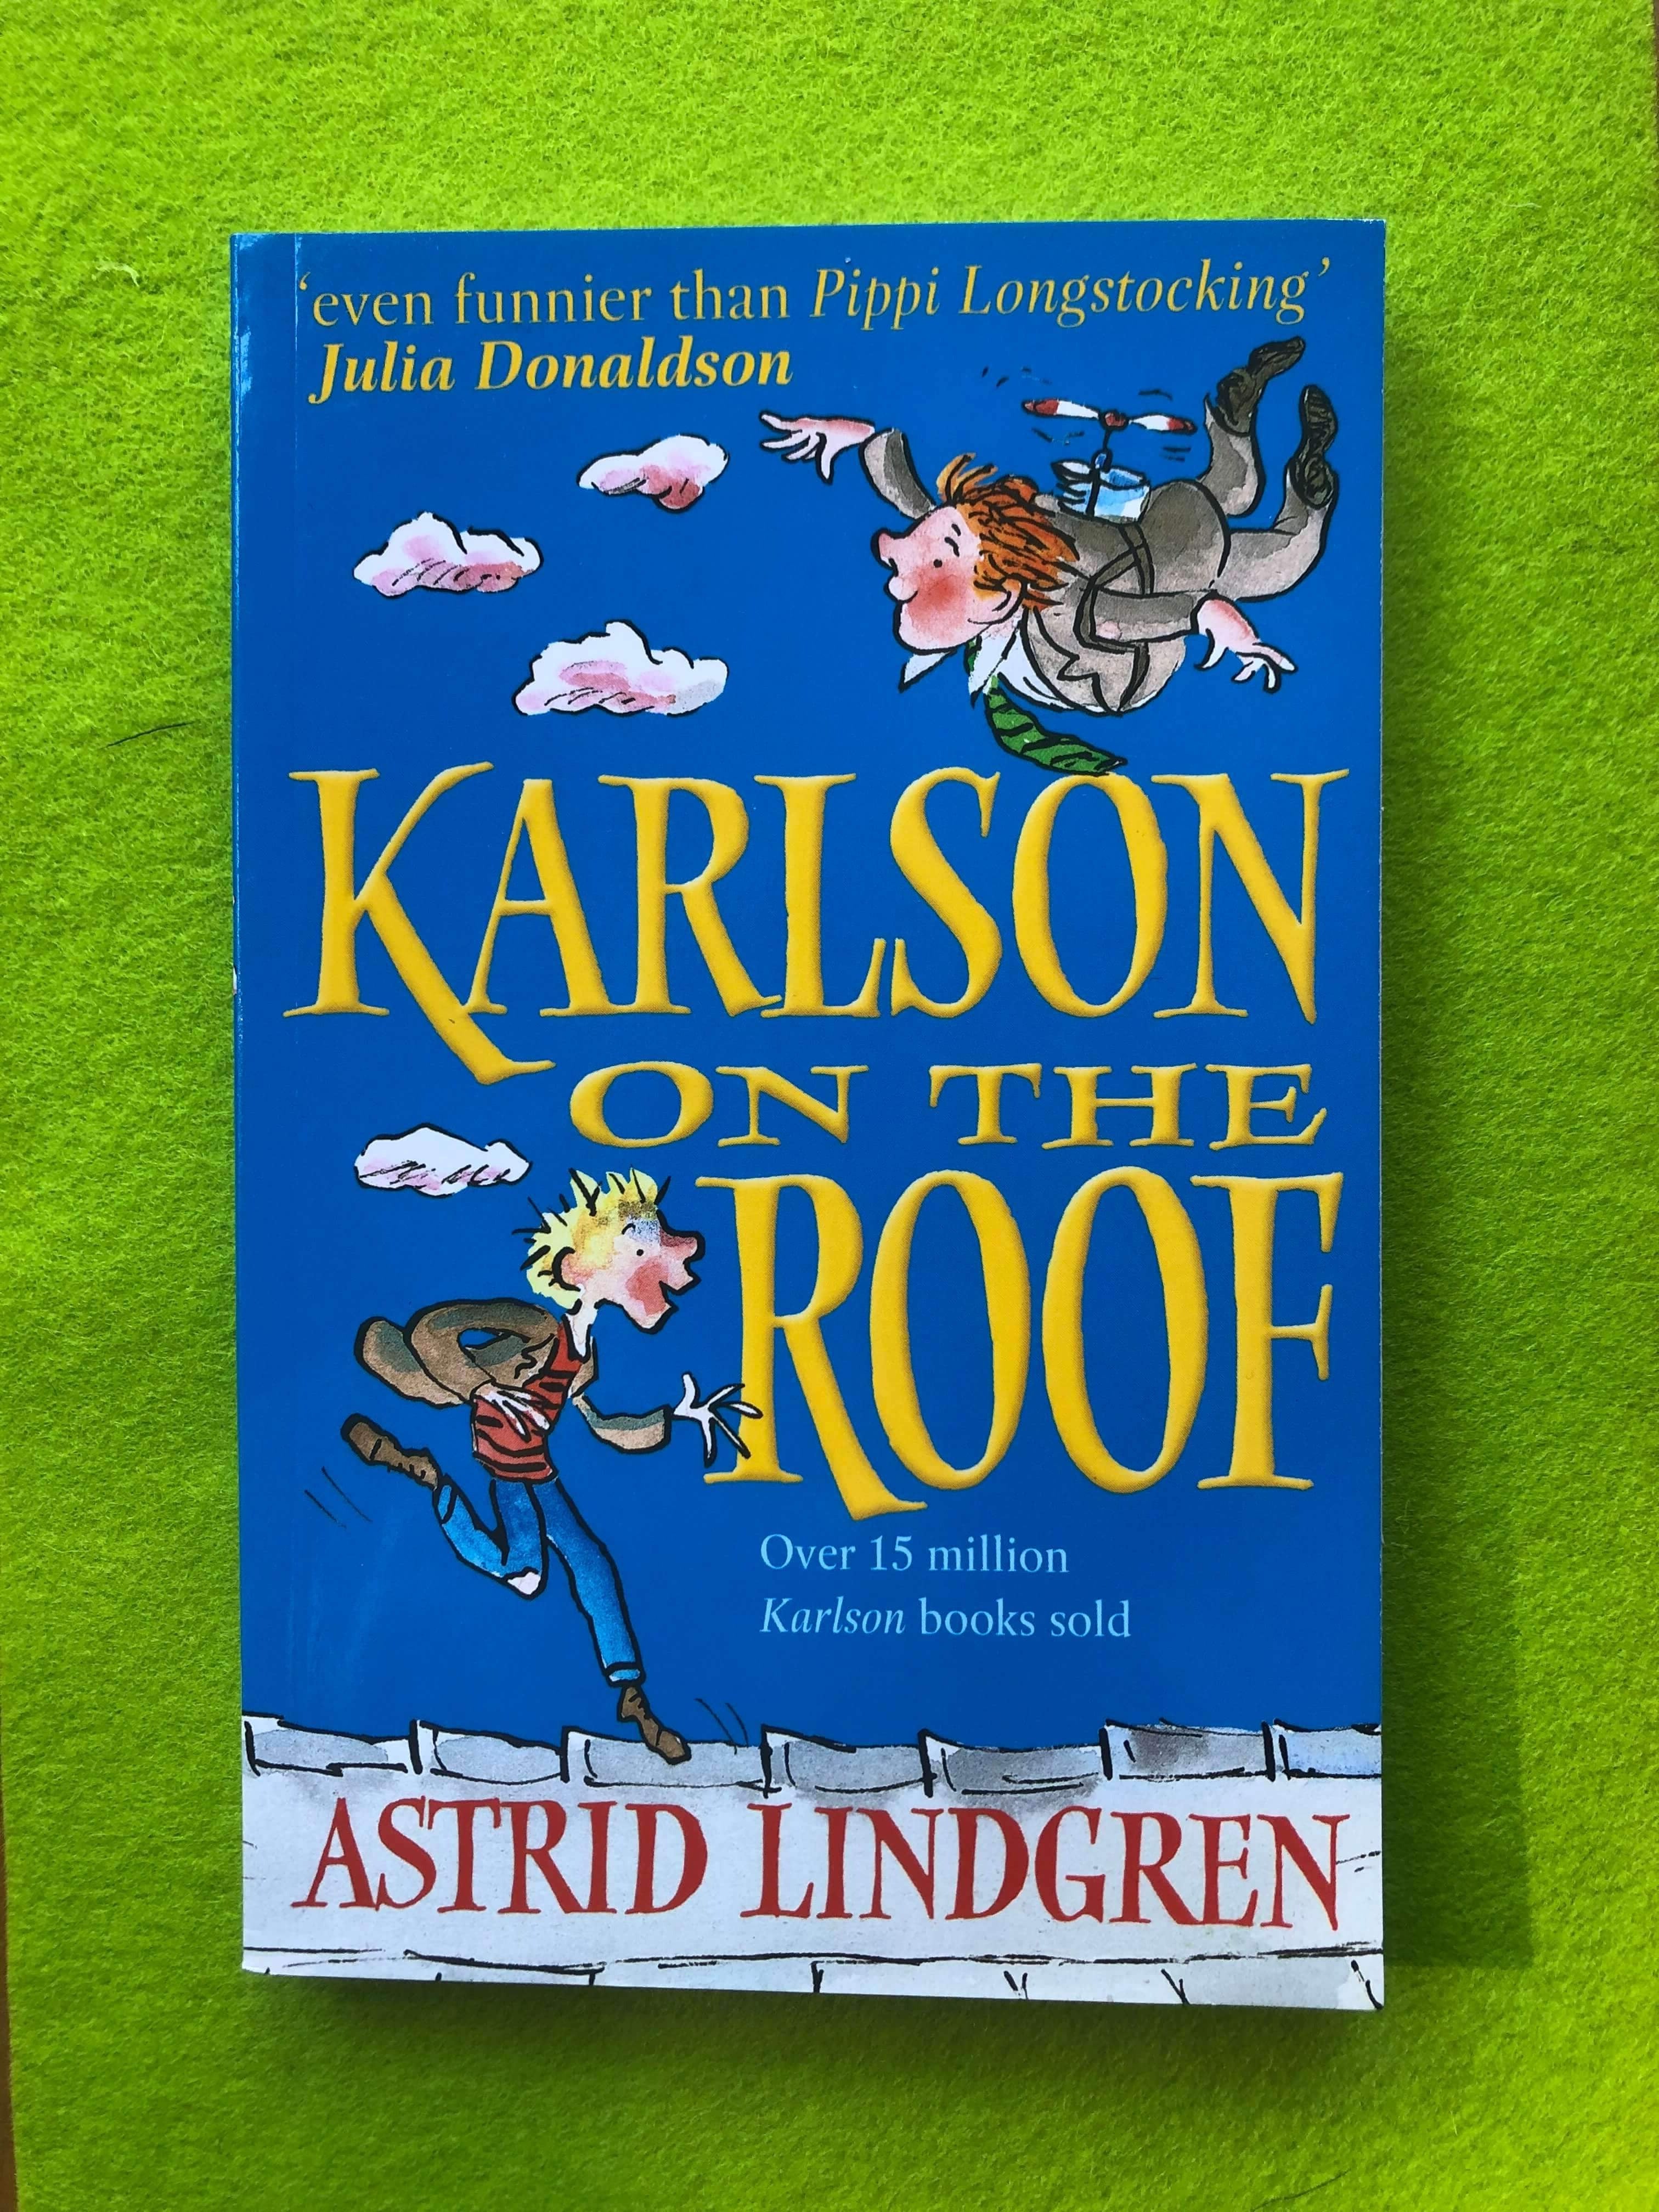 Karlsson on the Roof (Korean) - Astrid Lindgren - 9788932013367